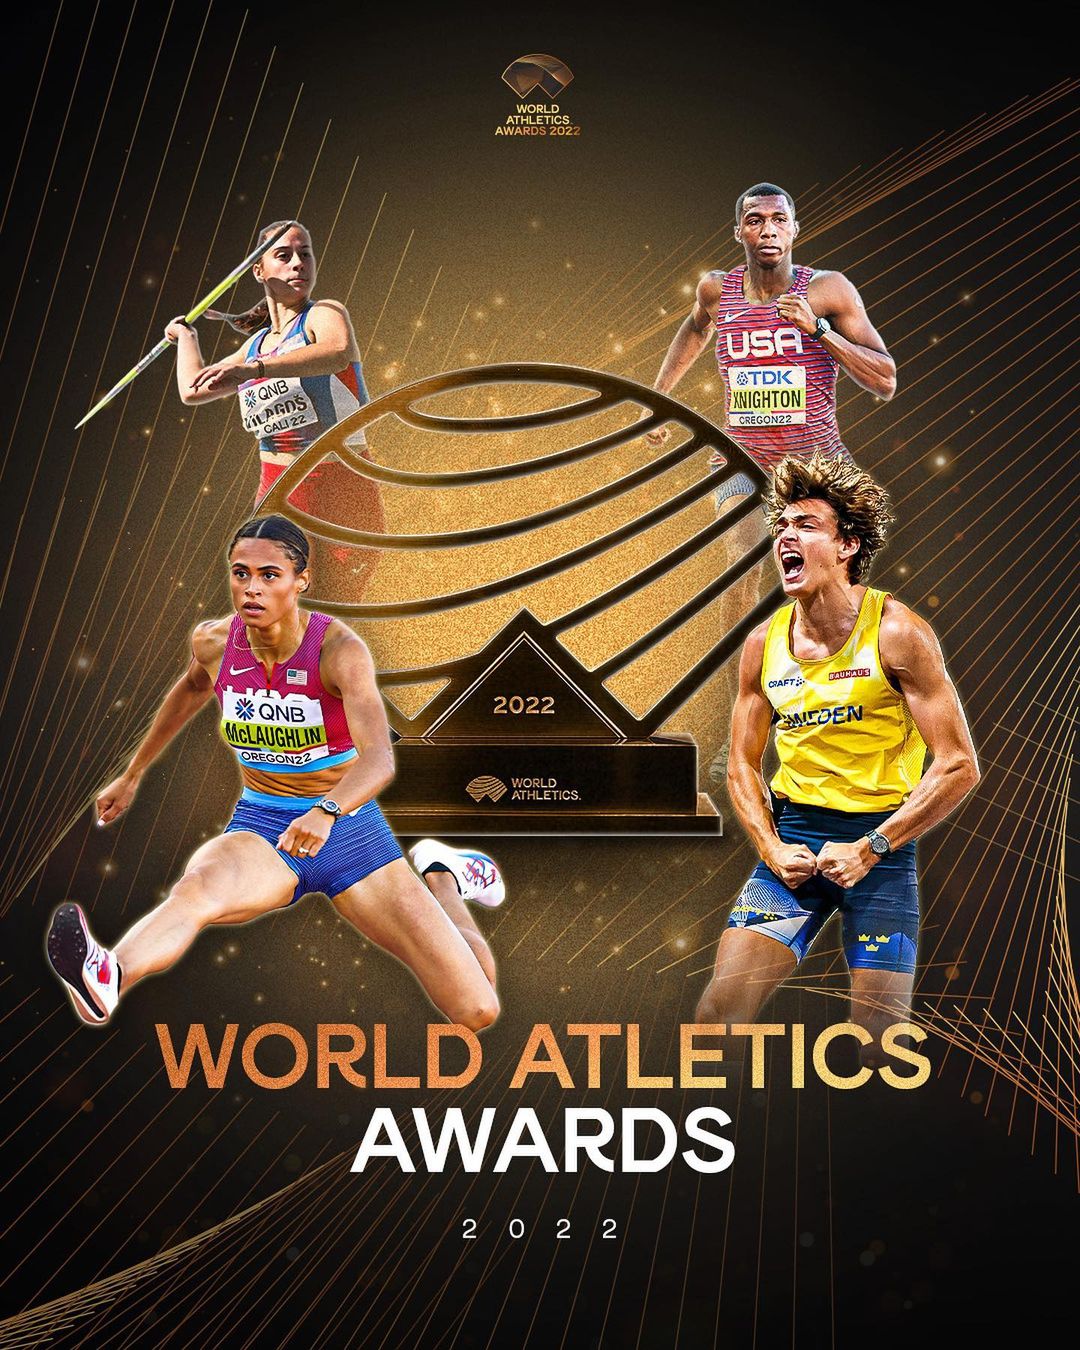 World Athletics Awards 2022